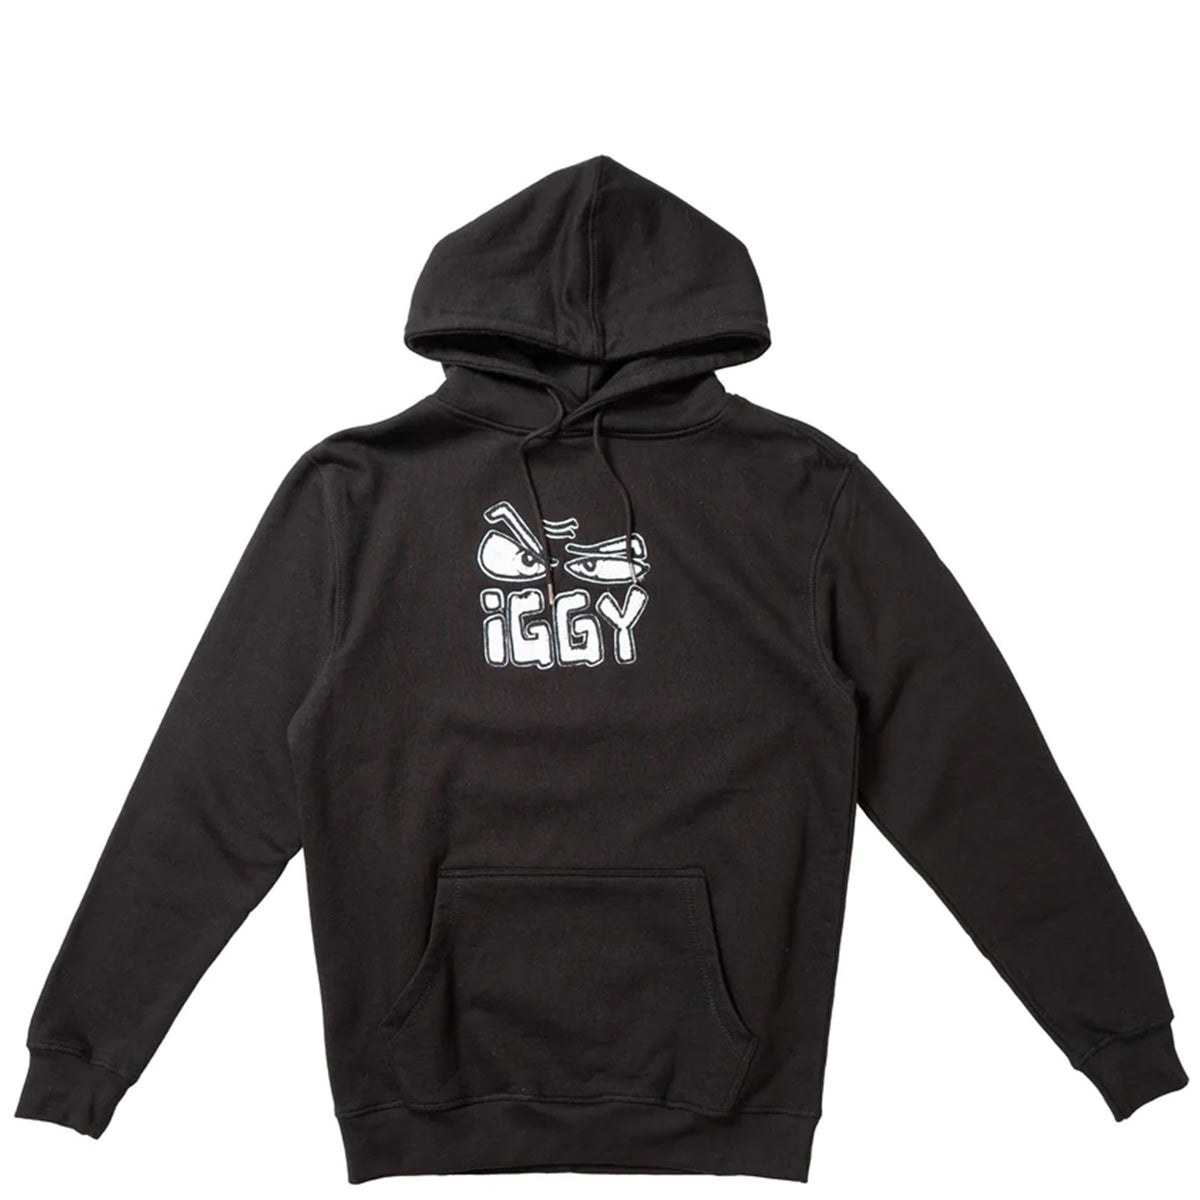 Iggy I Went To Your Hooded Sweatshirt - Black